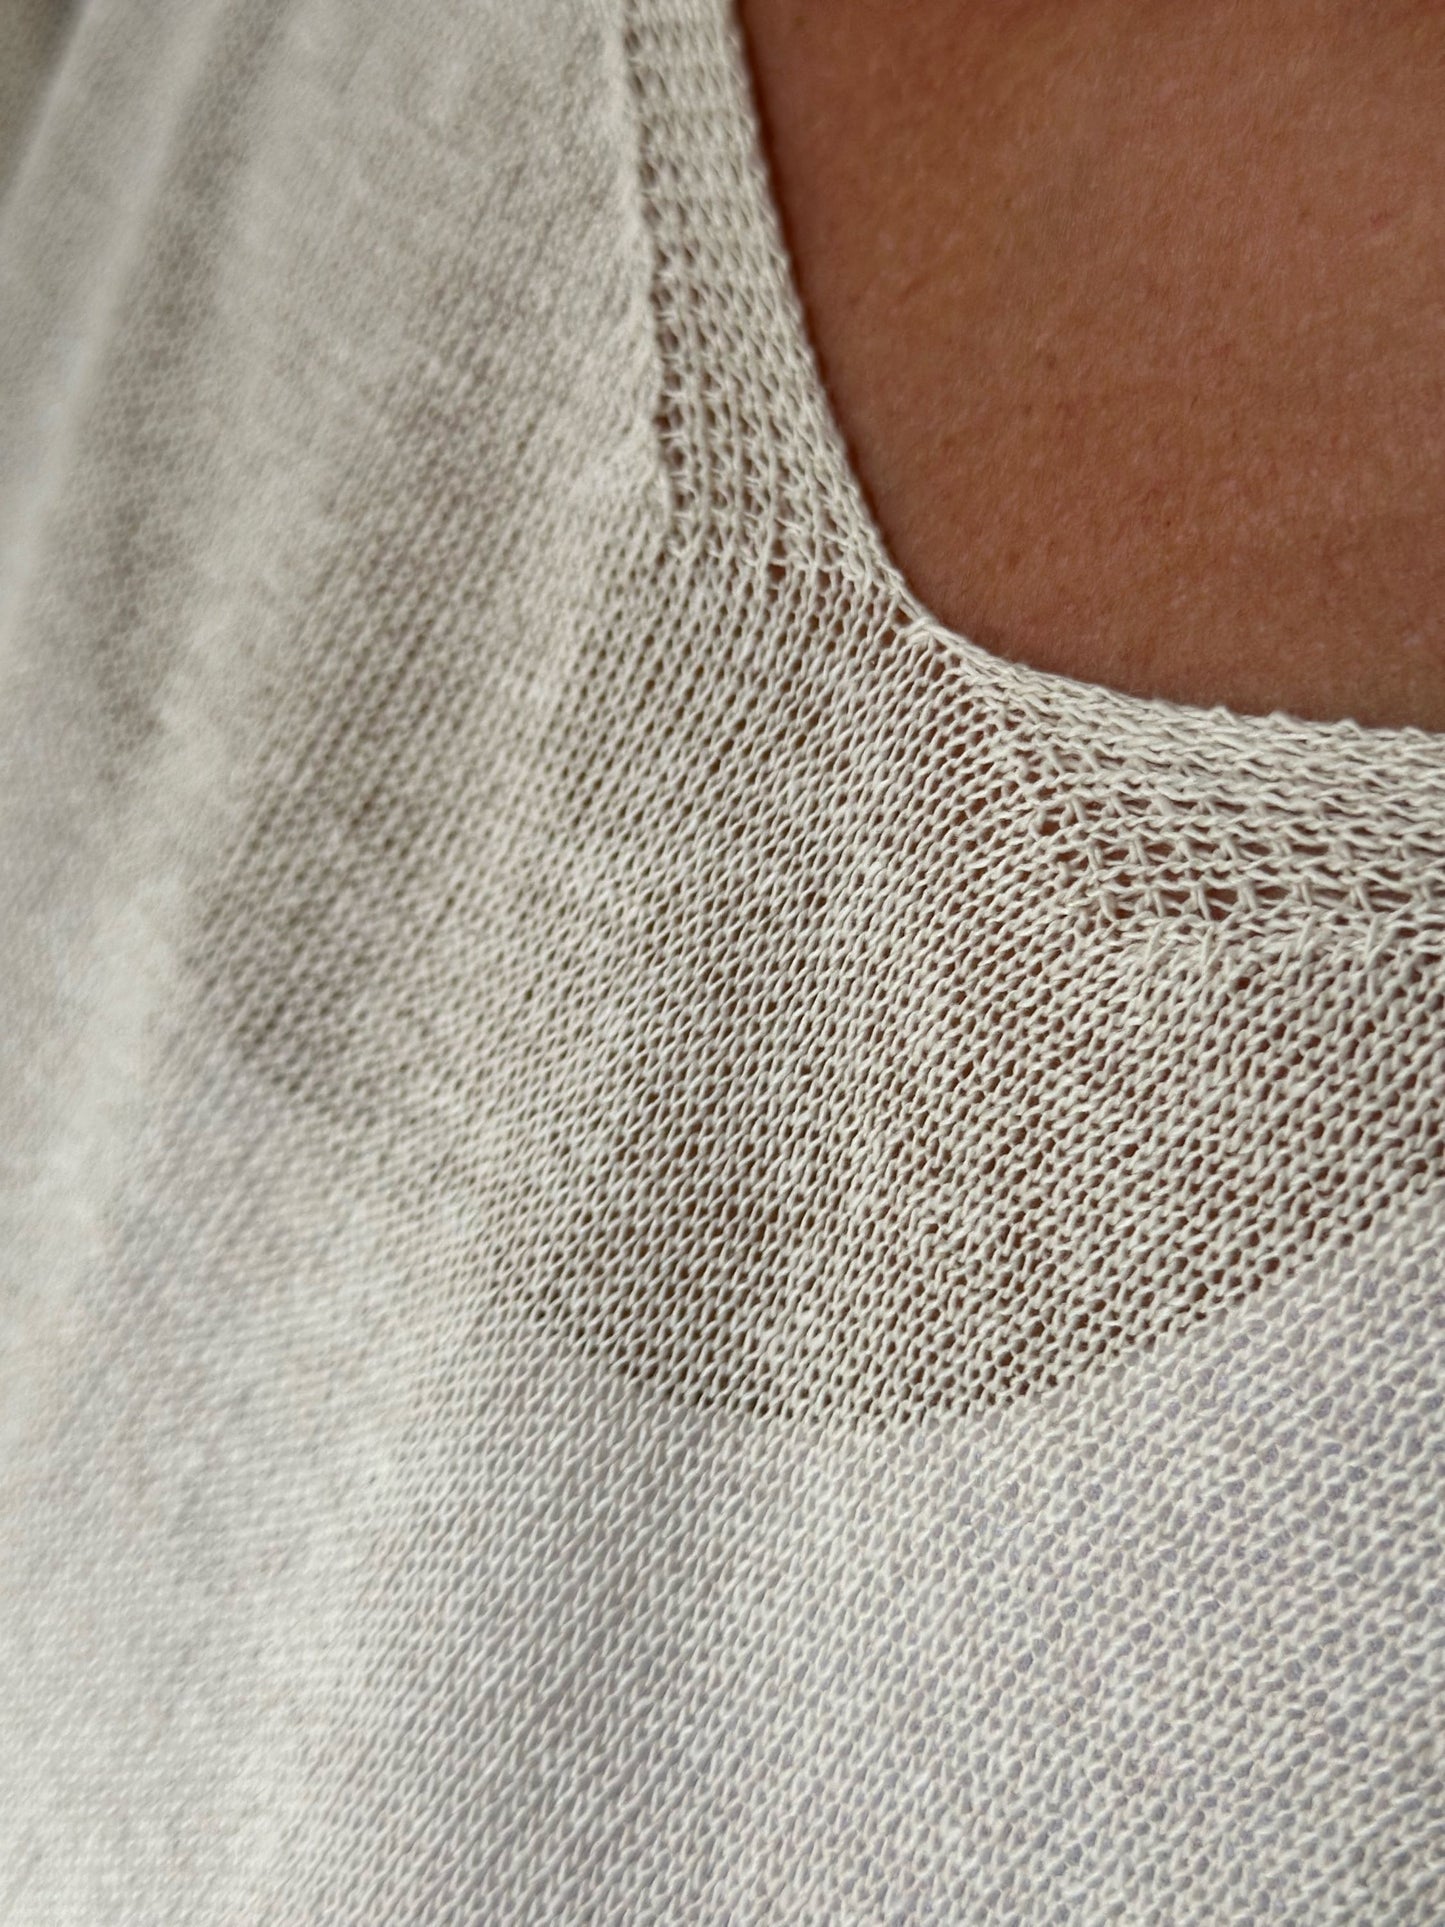 Leicht transparenter Oversized Pullover - Wollweiß